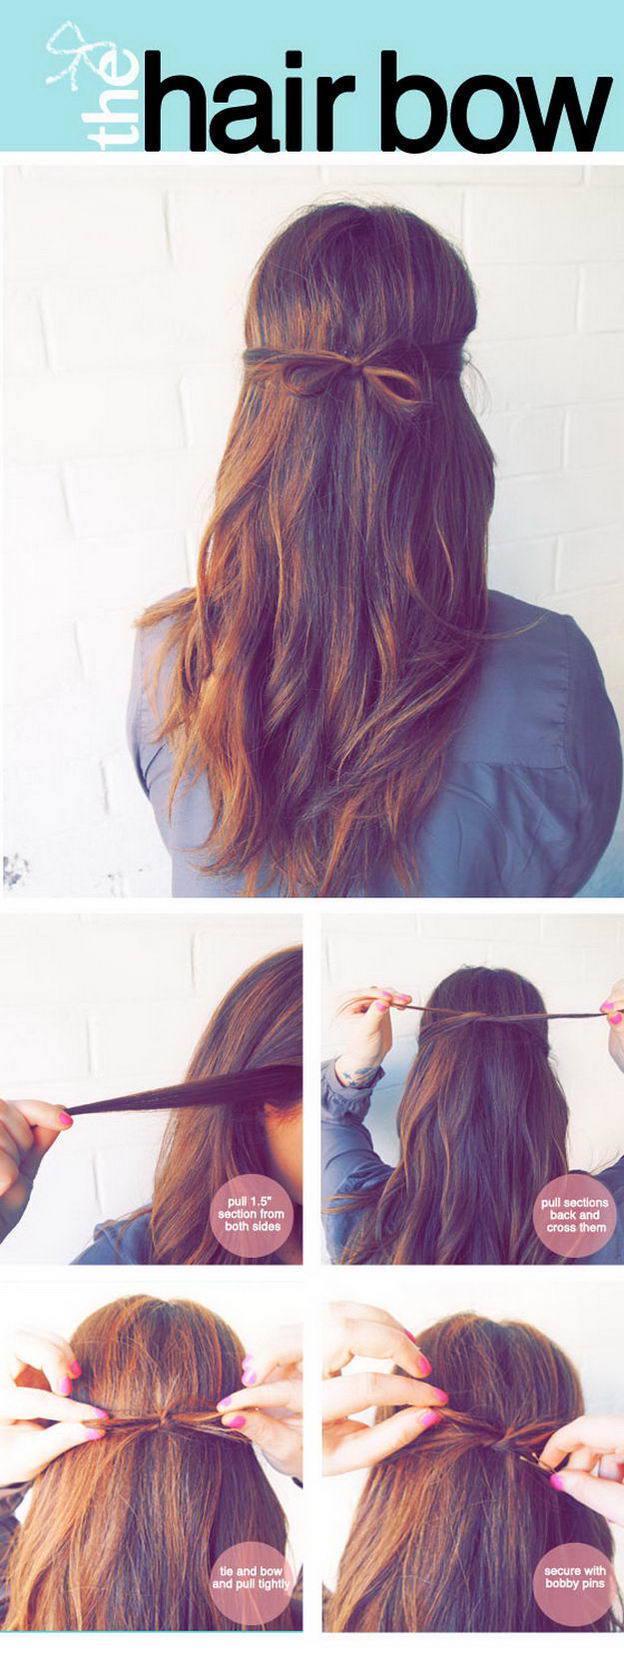 รูปภาพ:http://petmaya.com/wp-content/uploads/2015/02/2015-Hair-Ideas-01.jpg